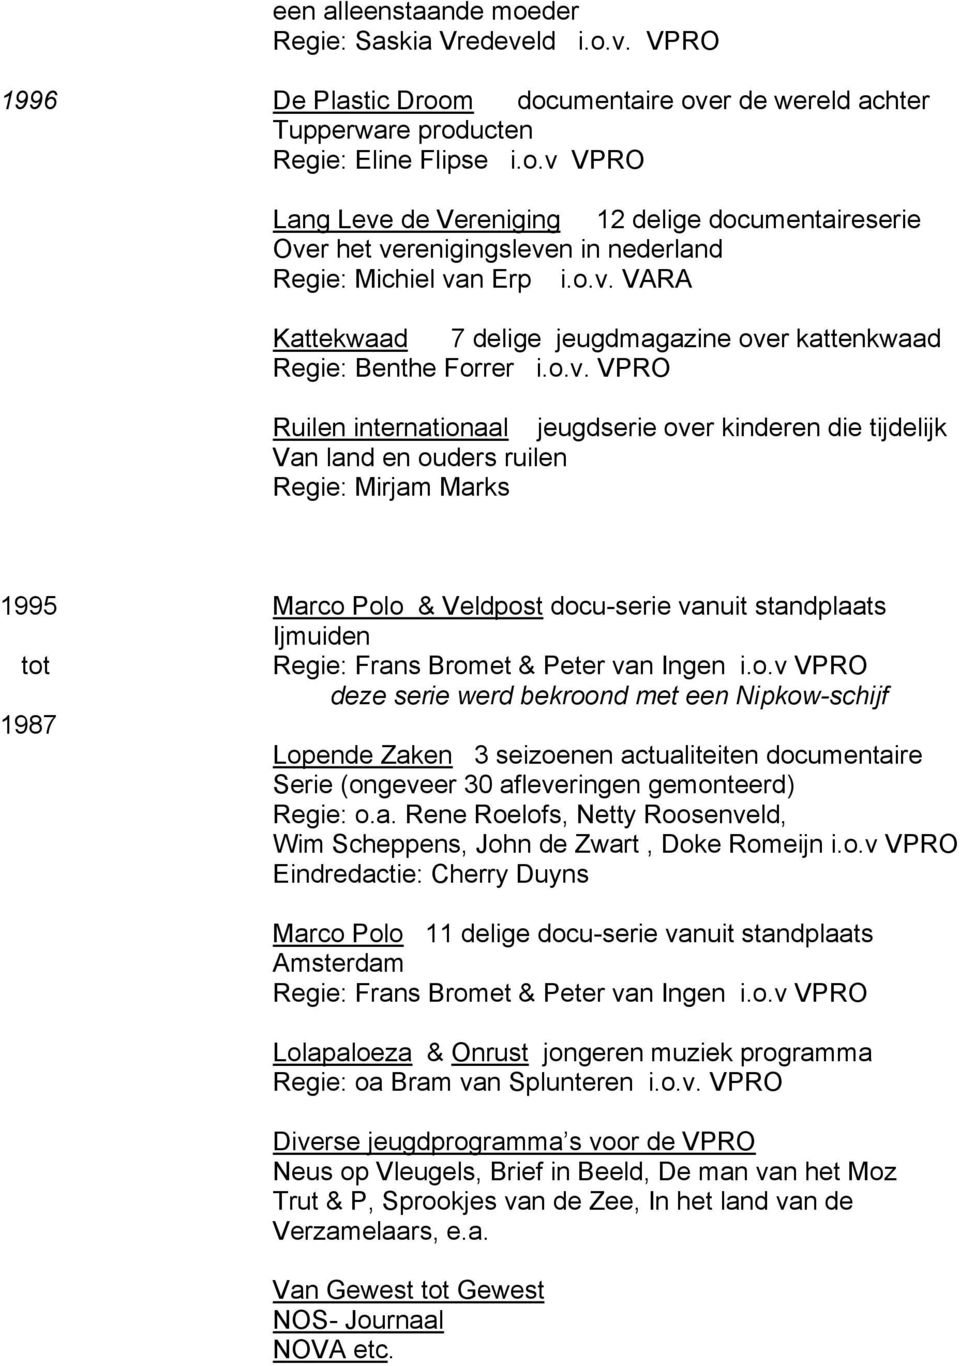 Bromet & Peter van Ingen i.o.v VPRO deze serie werd bekroond met een Nipkow-schijf 1987 Lopende Zaken 3 seizoenen actualiteiten documentaire Serie (ongeveer 30 afleveringen gemonteerd) Regie: o.a. Rene Roelofs, Netty Roosenveld, Wim Scheppens, John de Zwart, Doke Romeijn i.